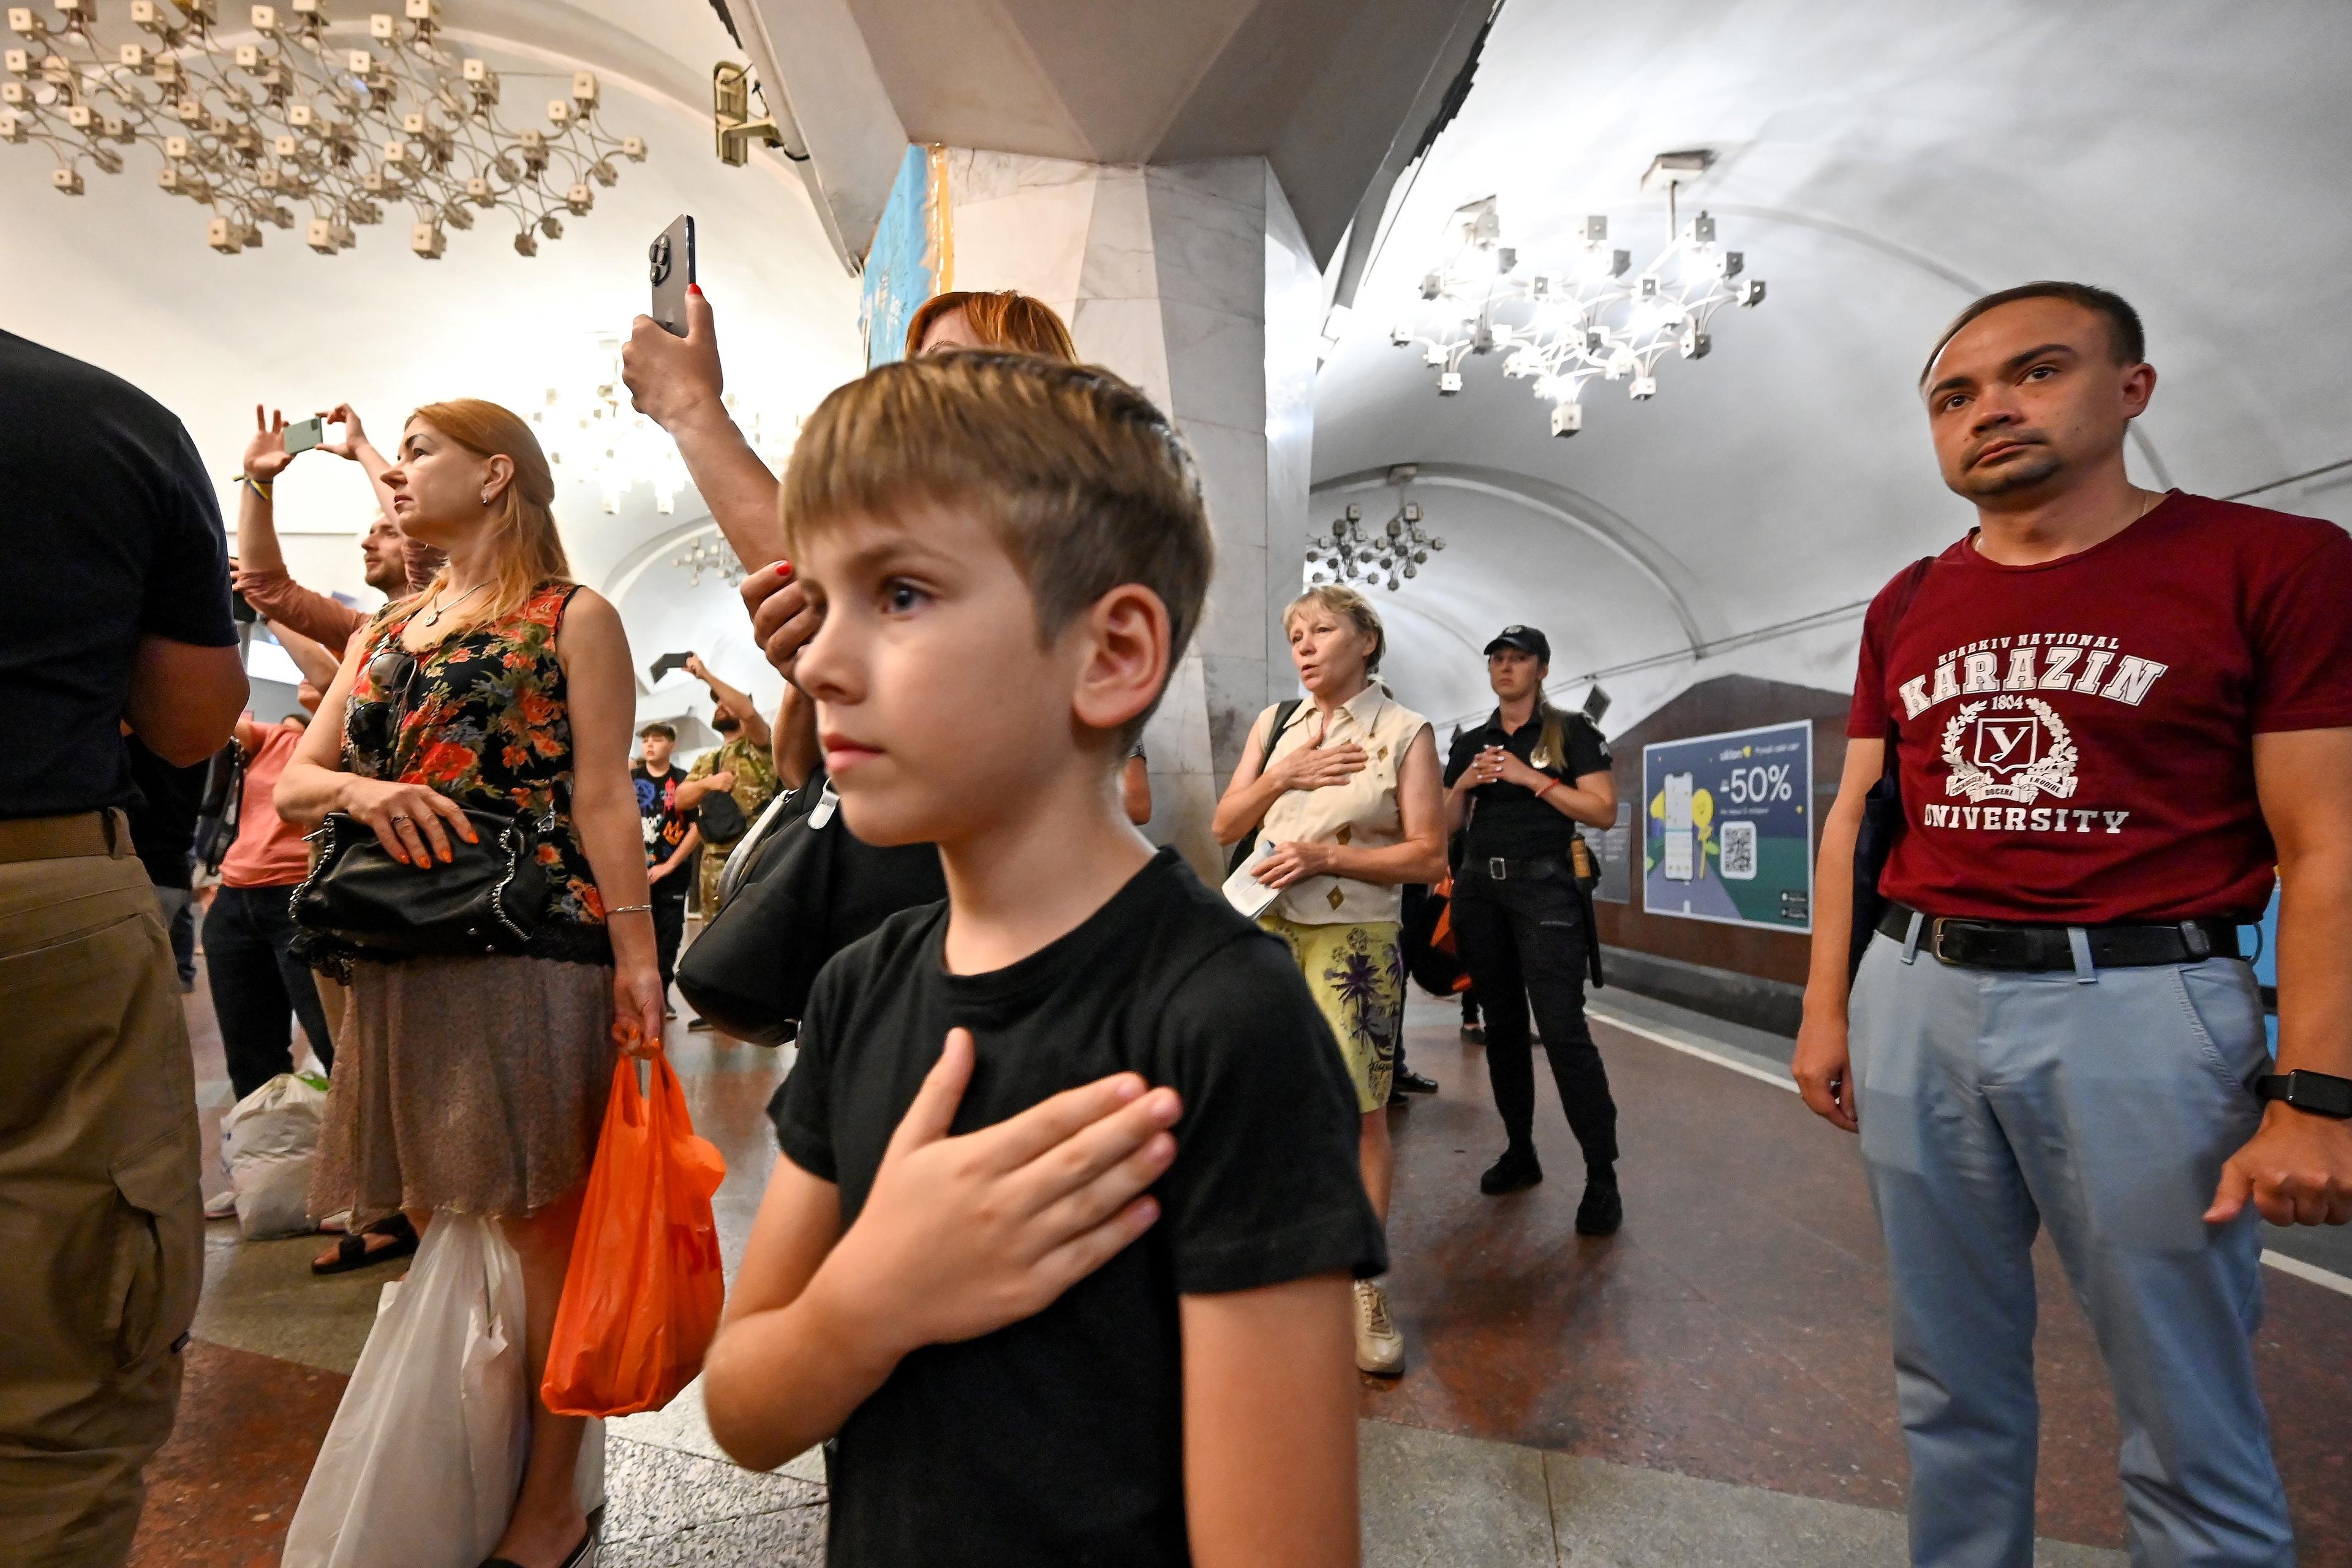 Ludzie na peronie w metrze śpiewają trzymając prawą rękę na sercu. Na pierwszym planie - mały chłopiec